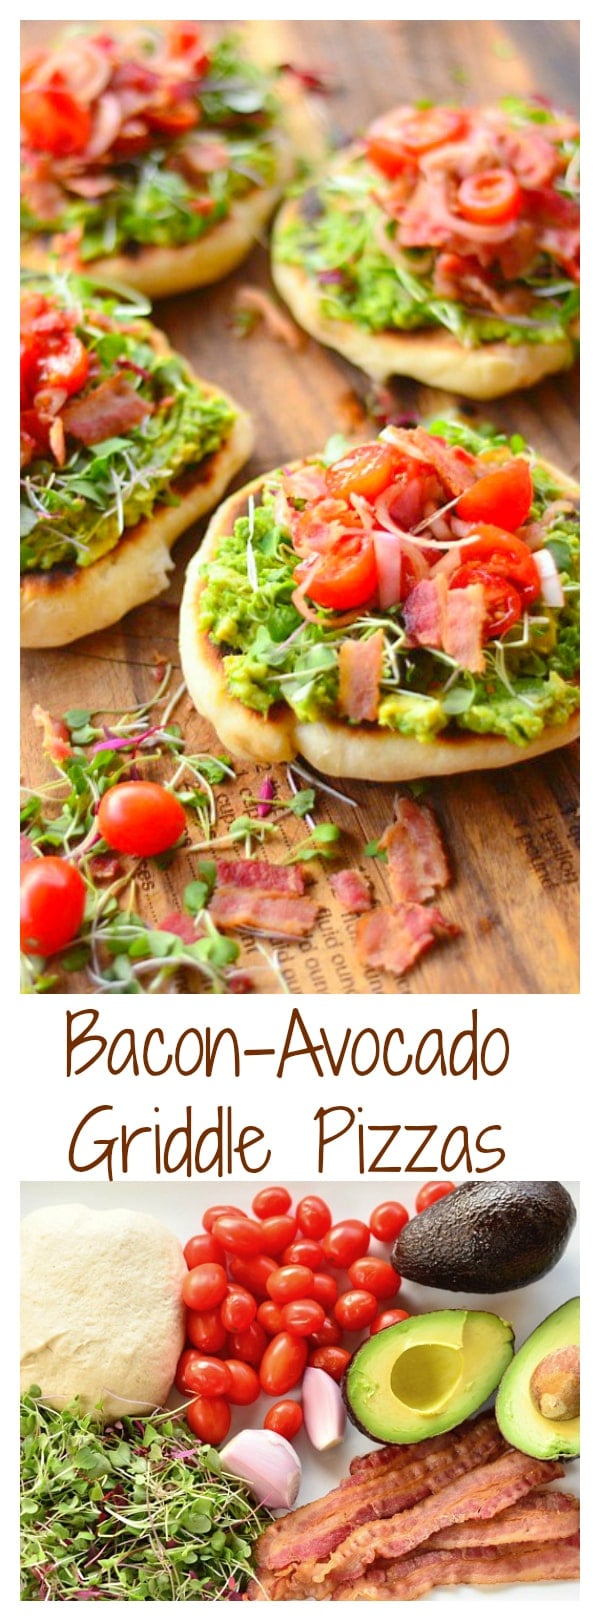 Bacon-Avocado Griddle Pizzas